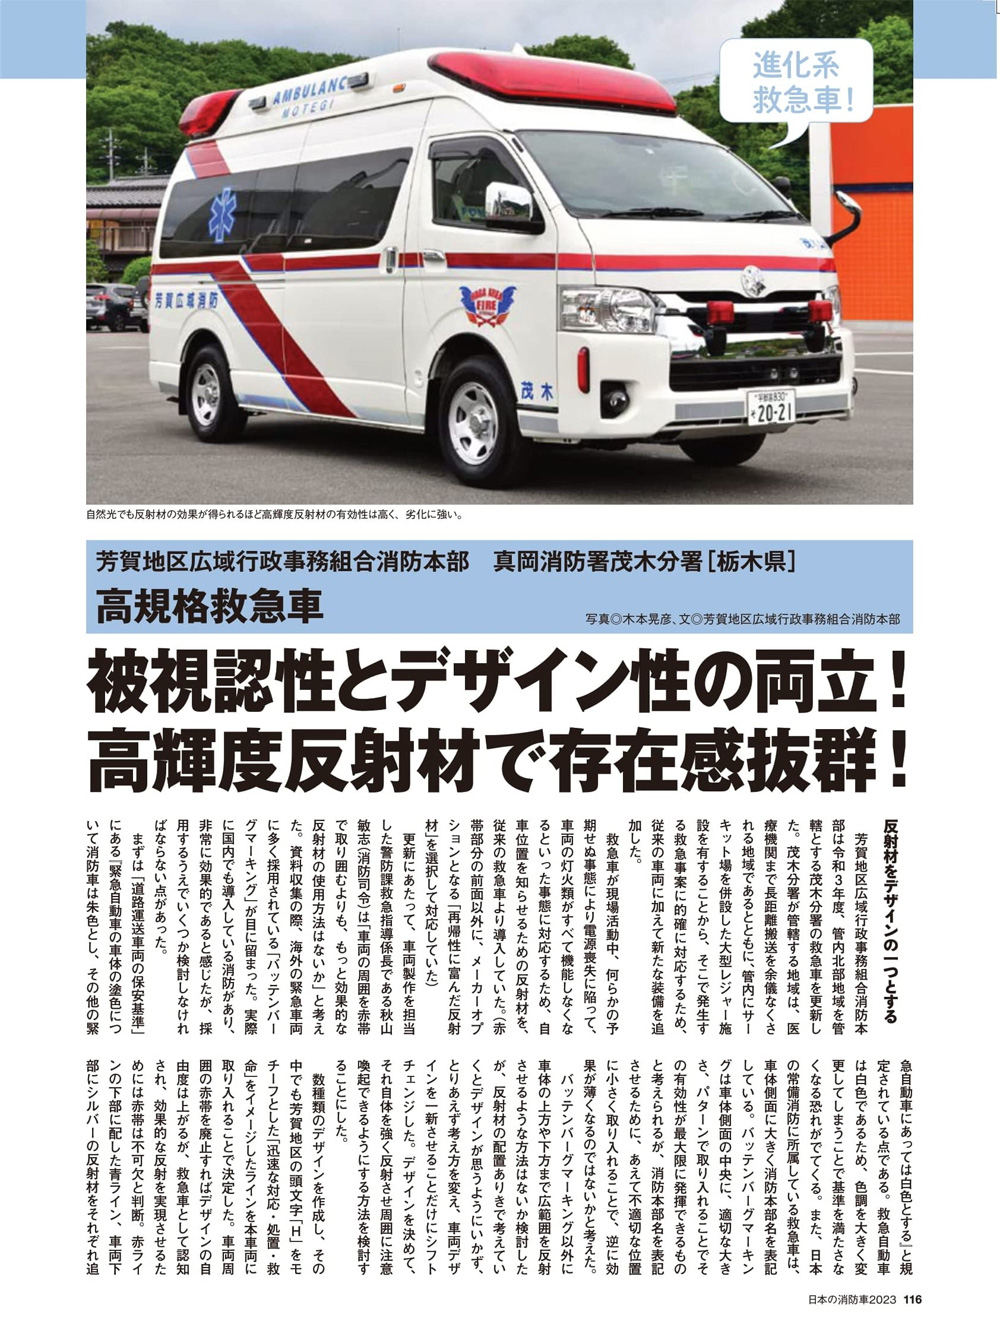 日本の消防車 2023 ムック (イカロス出版 イカロスムック No.61859-12) 商品画像_4